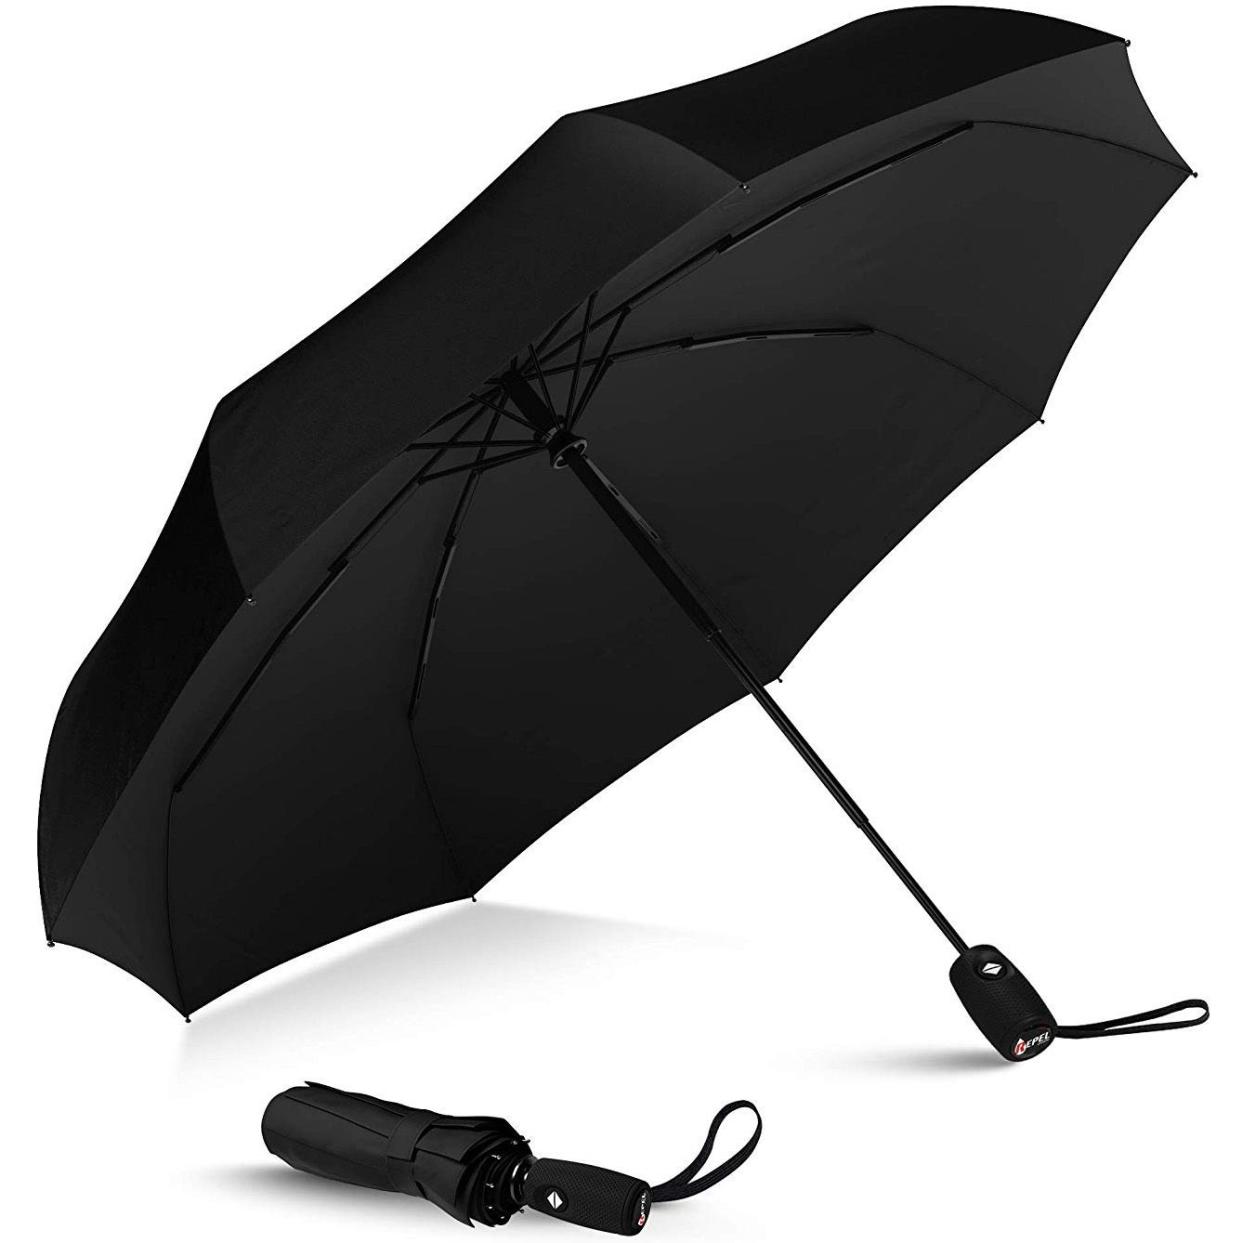 repel windproof travel umbrella